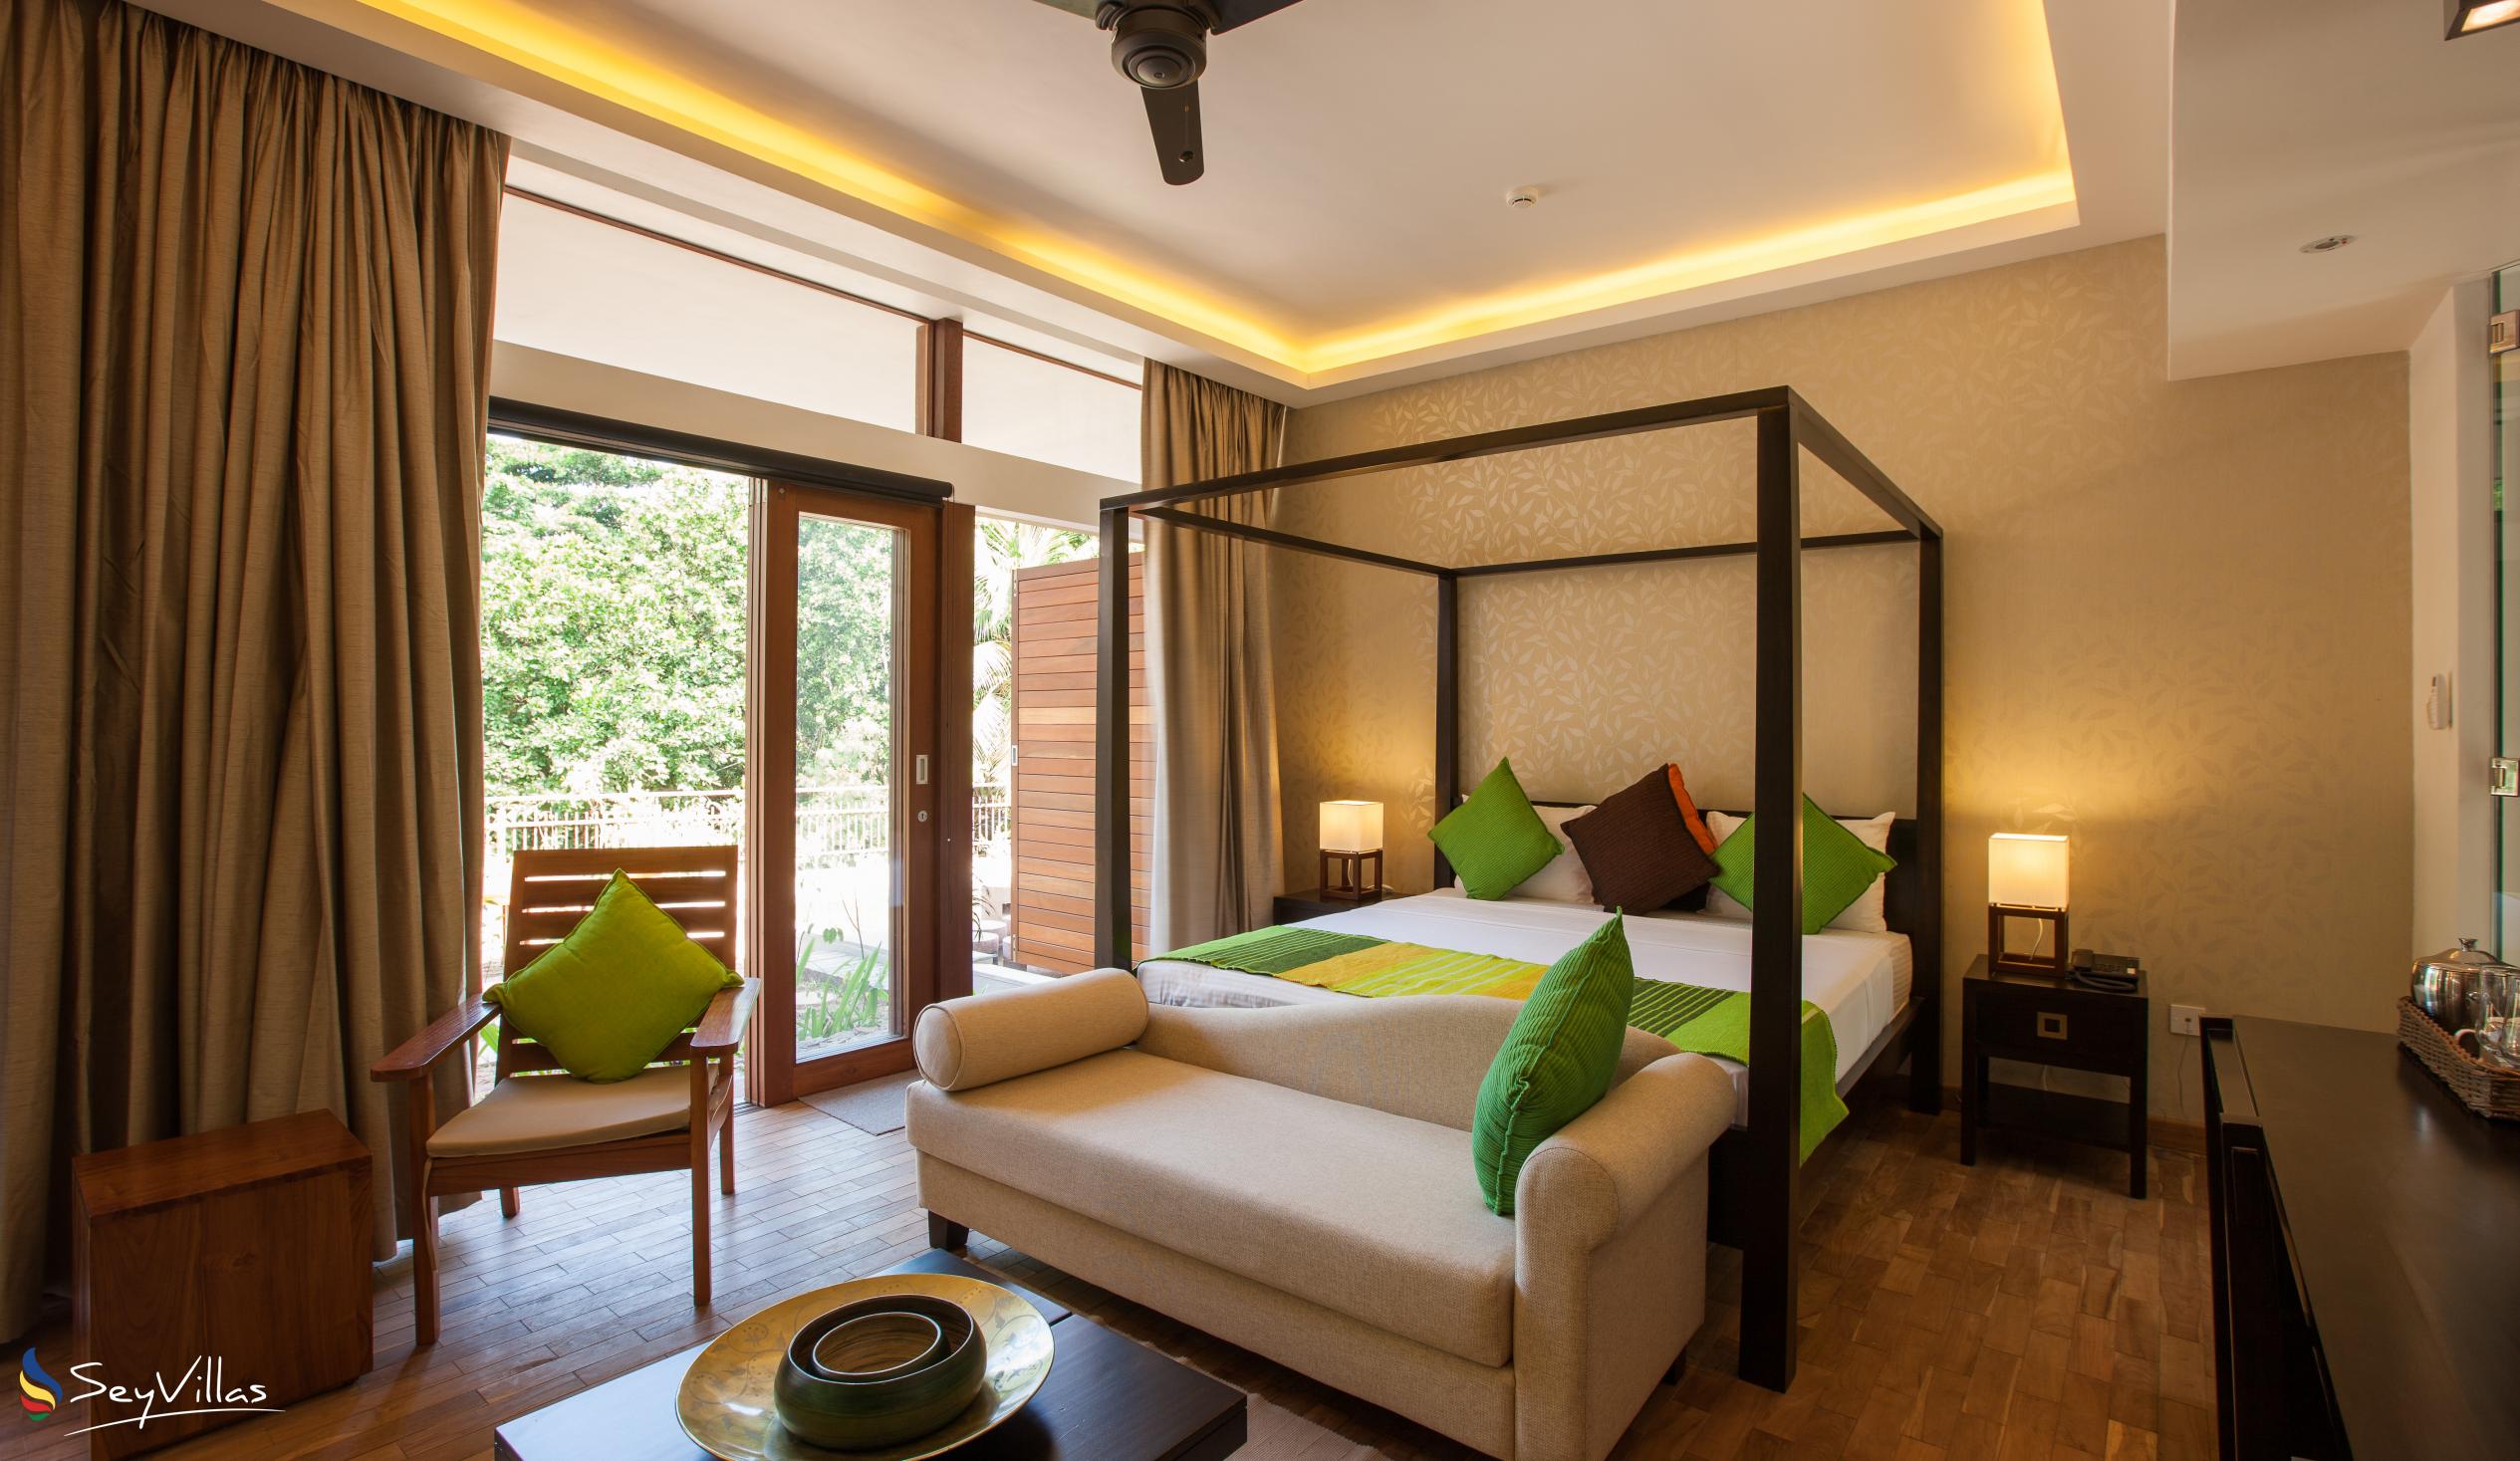 Foto 59: Le Relax Luxury Lodge - Suite de luxe - La Digue (Seychelles)